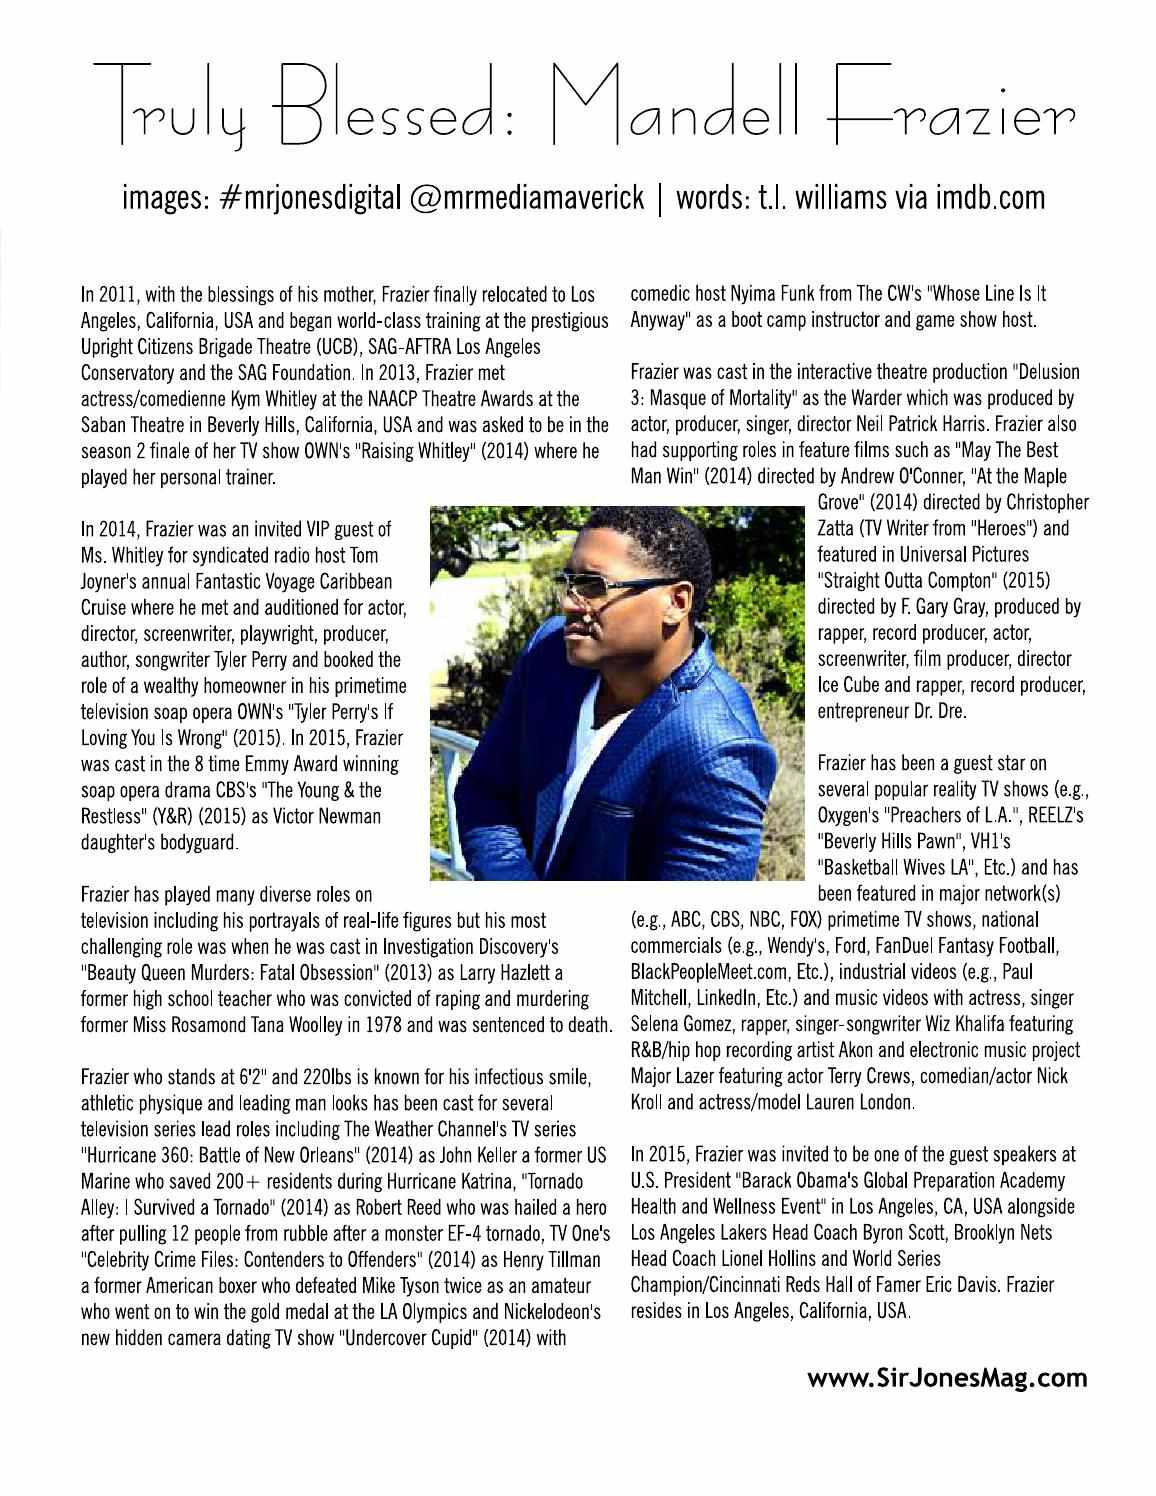 Mandell Frazier featured in Sir Jones Magazine - November 2015 Issue